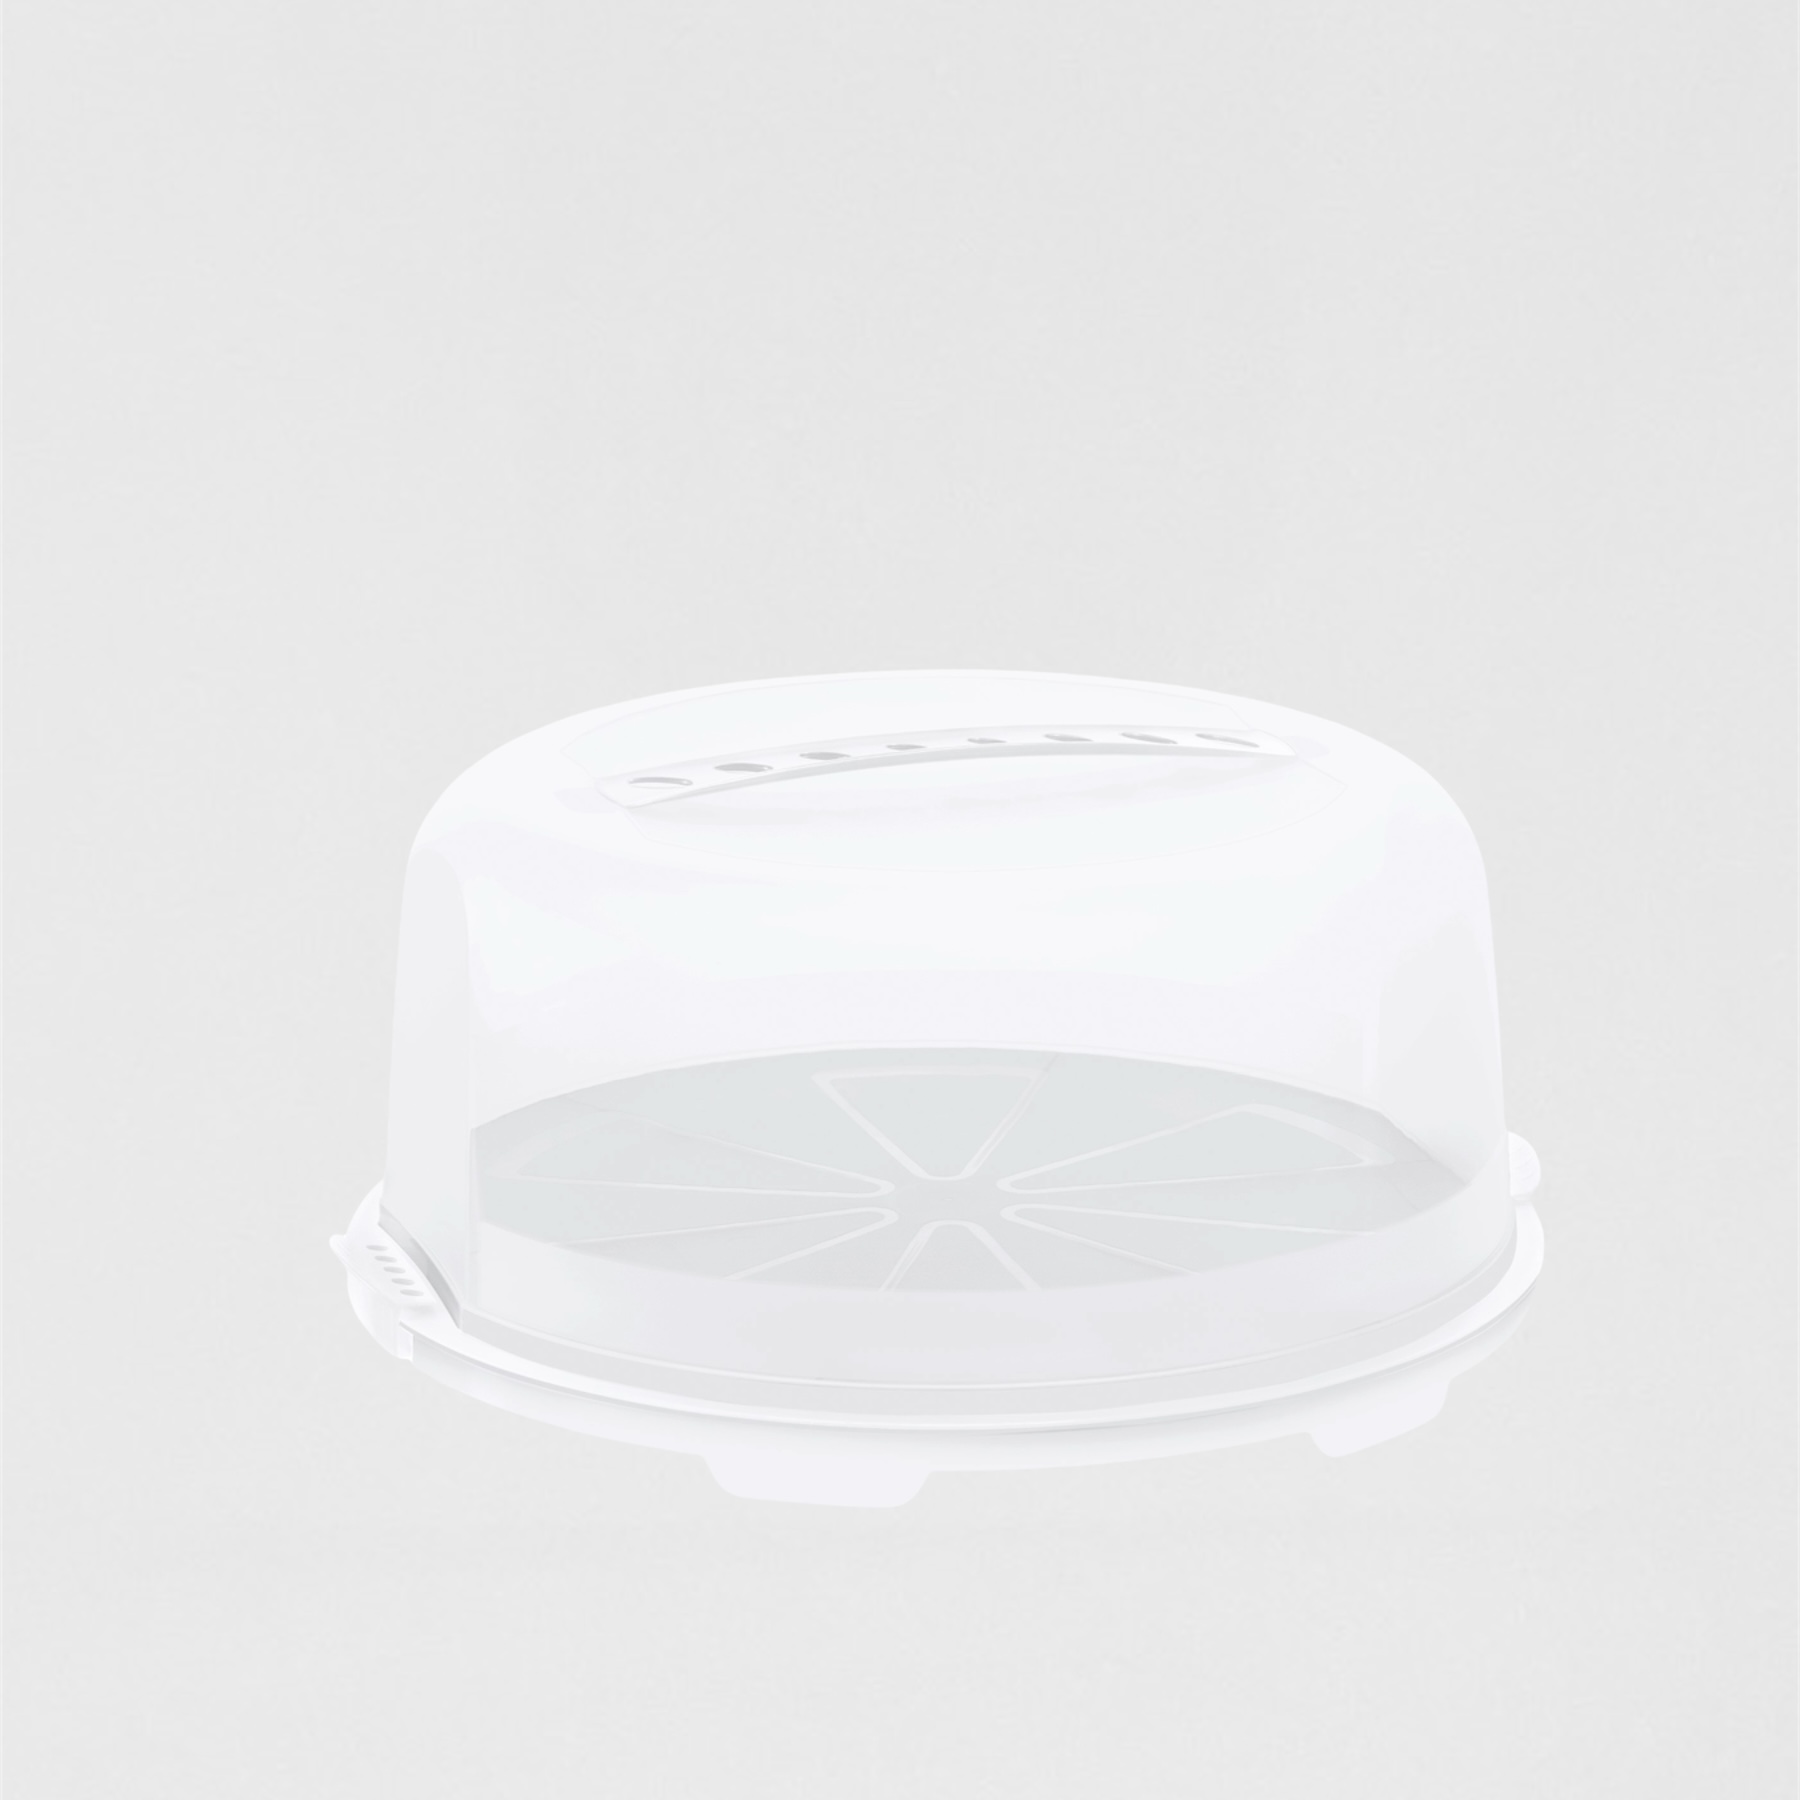 Ringo Big box 11.5L white-transparent round